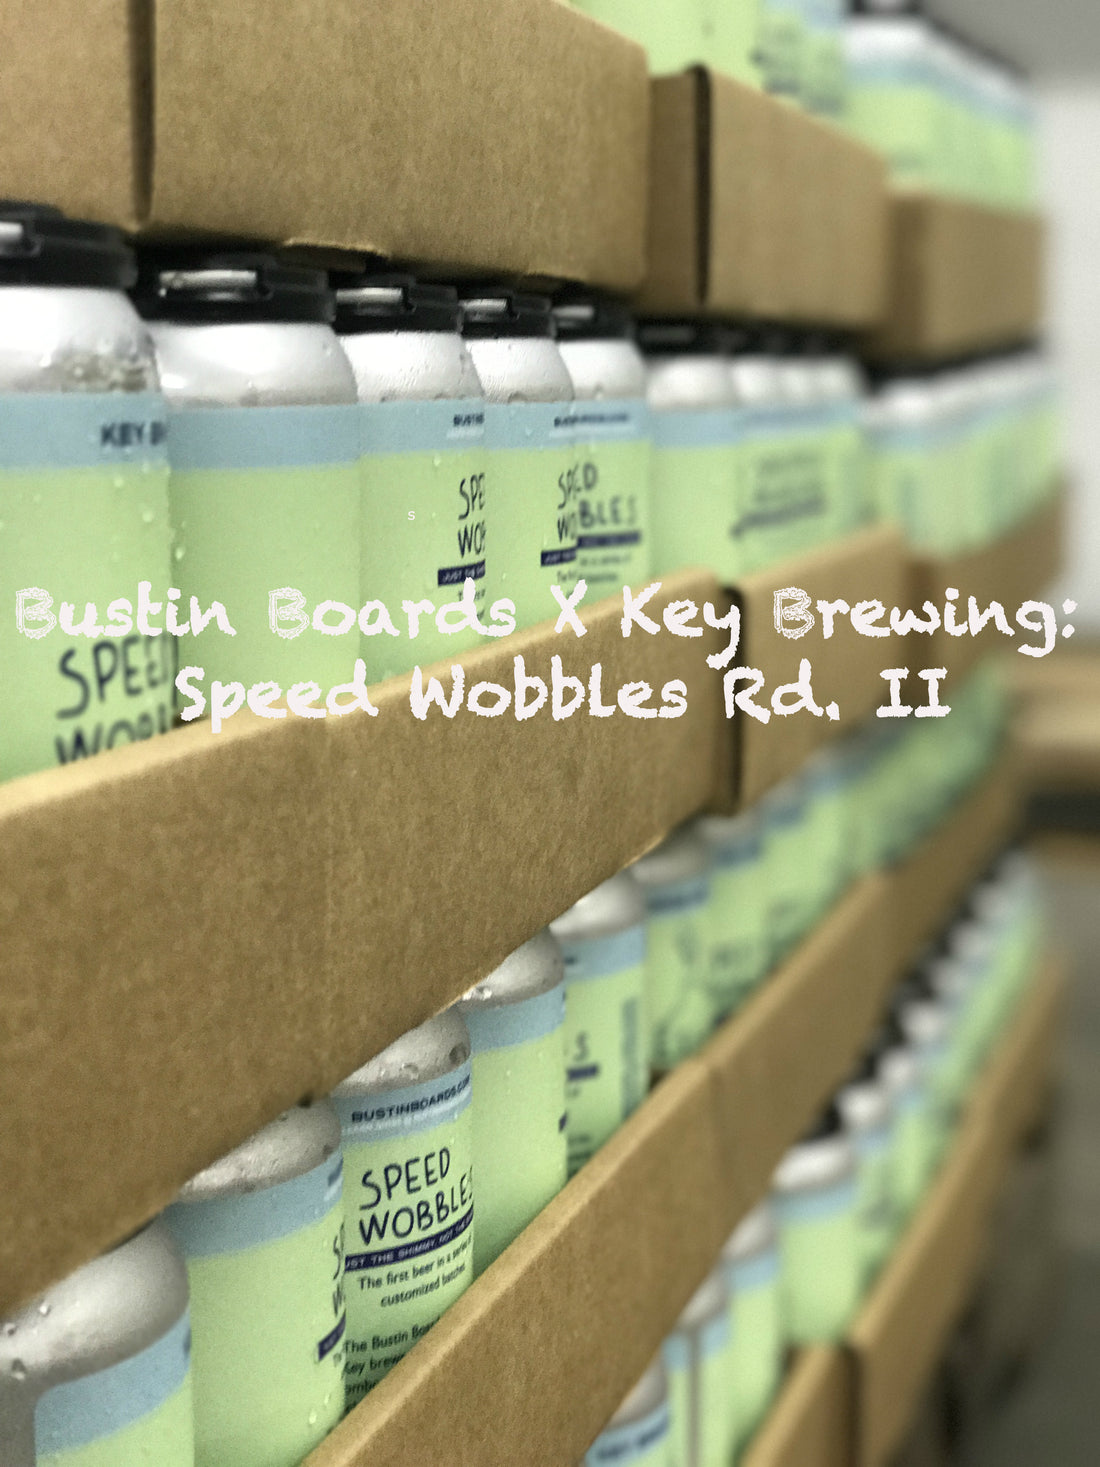 Bustin Boards X Key Brewing: Speed Wobbles Rd. II